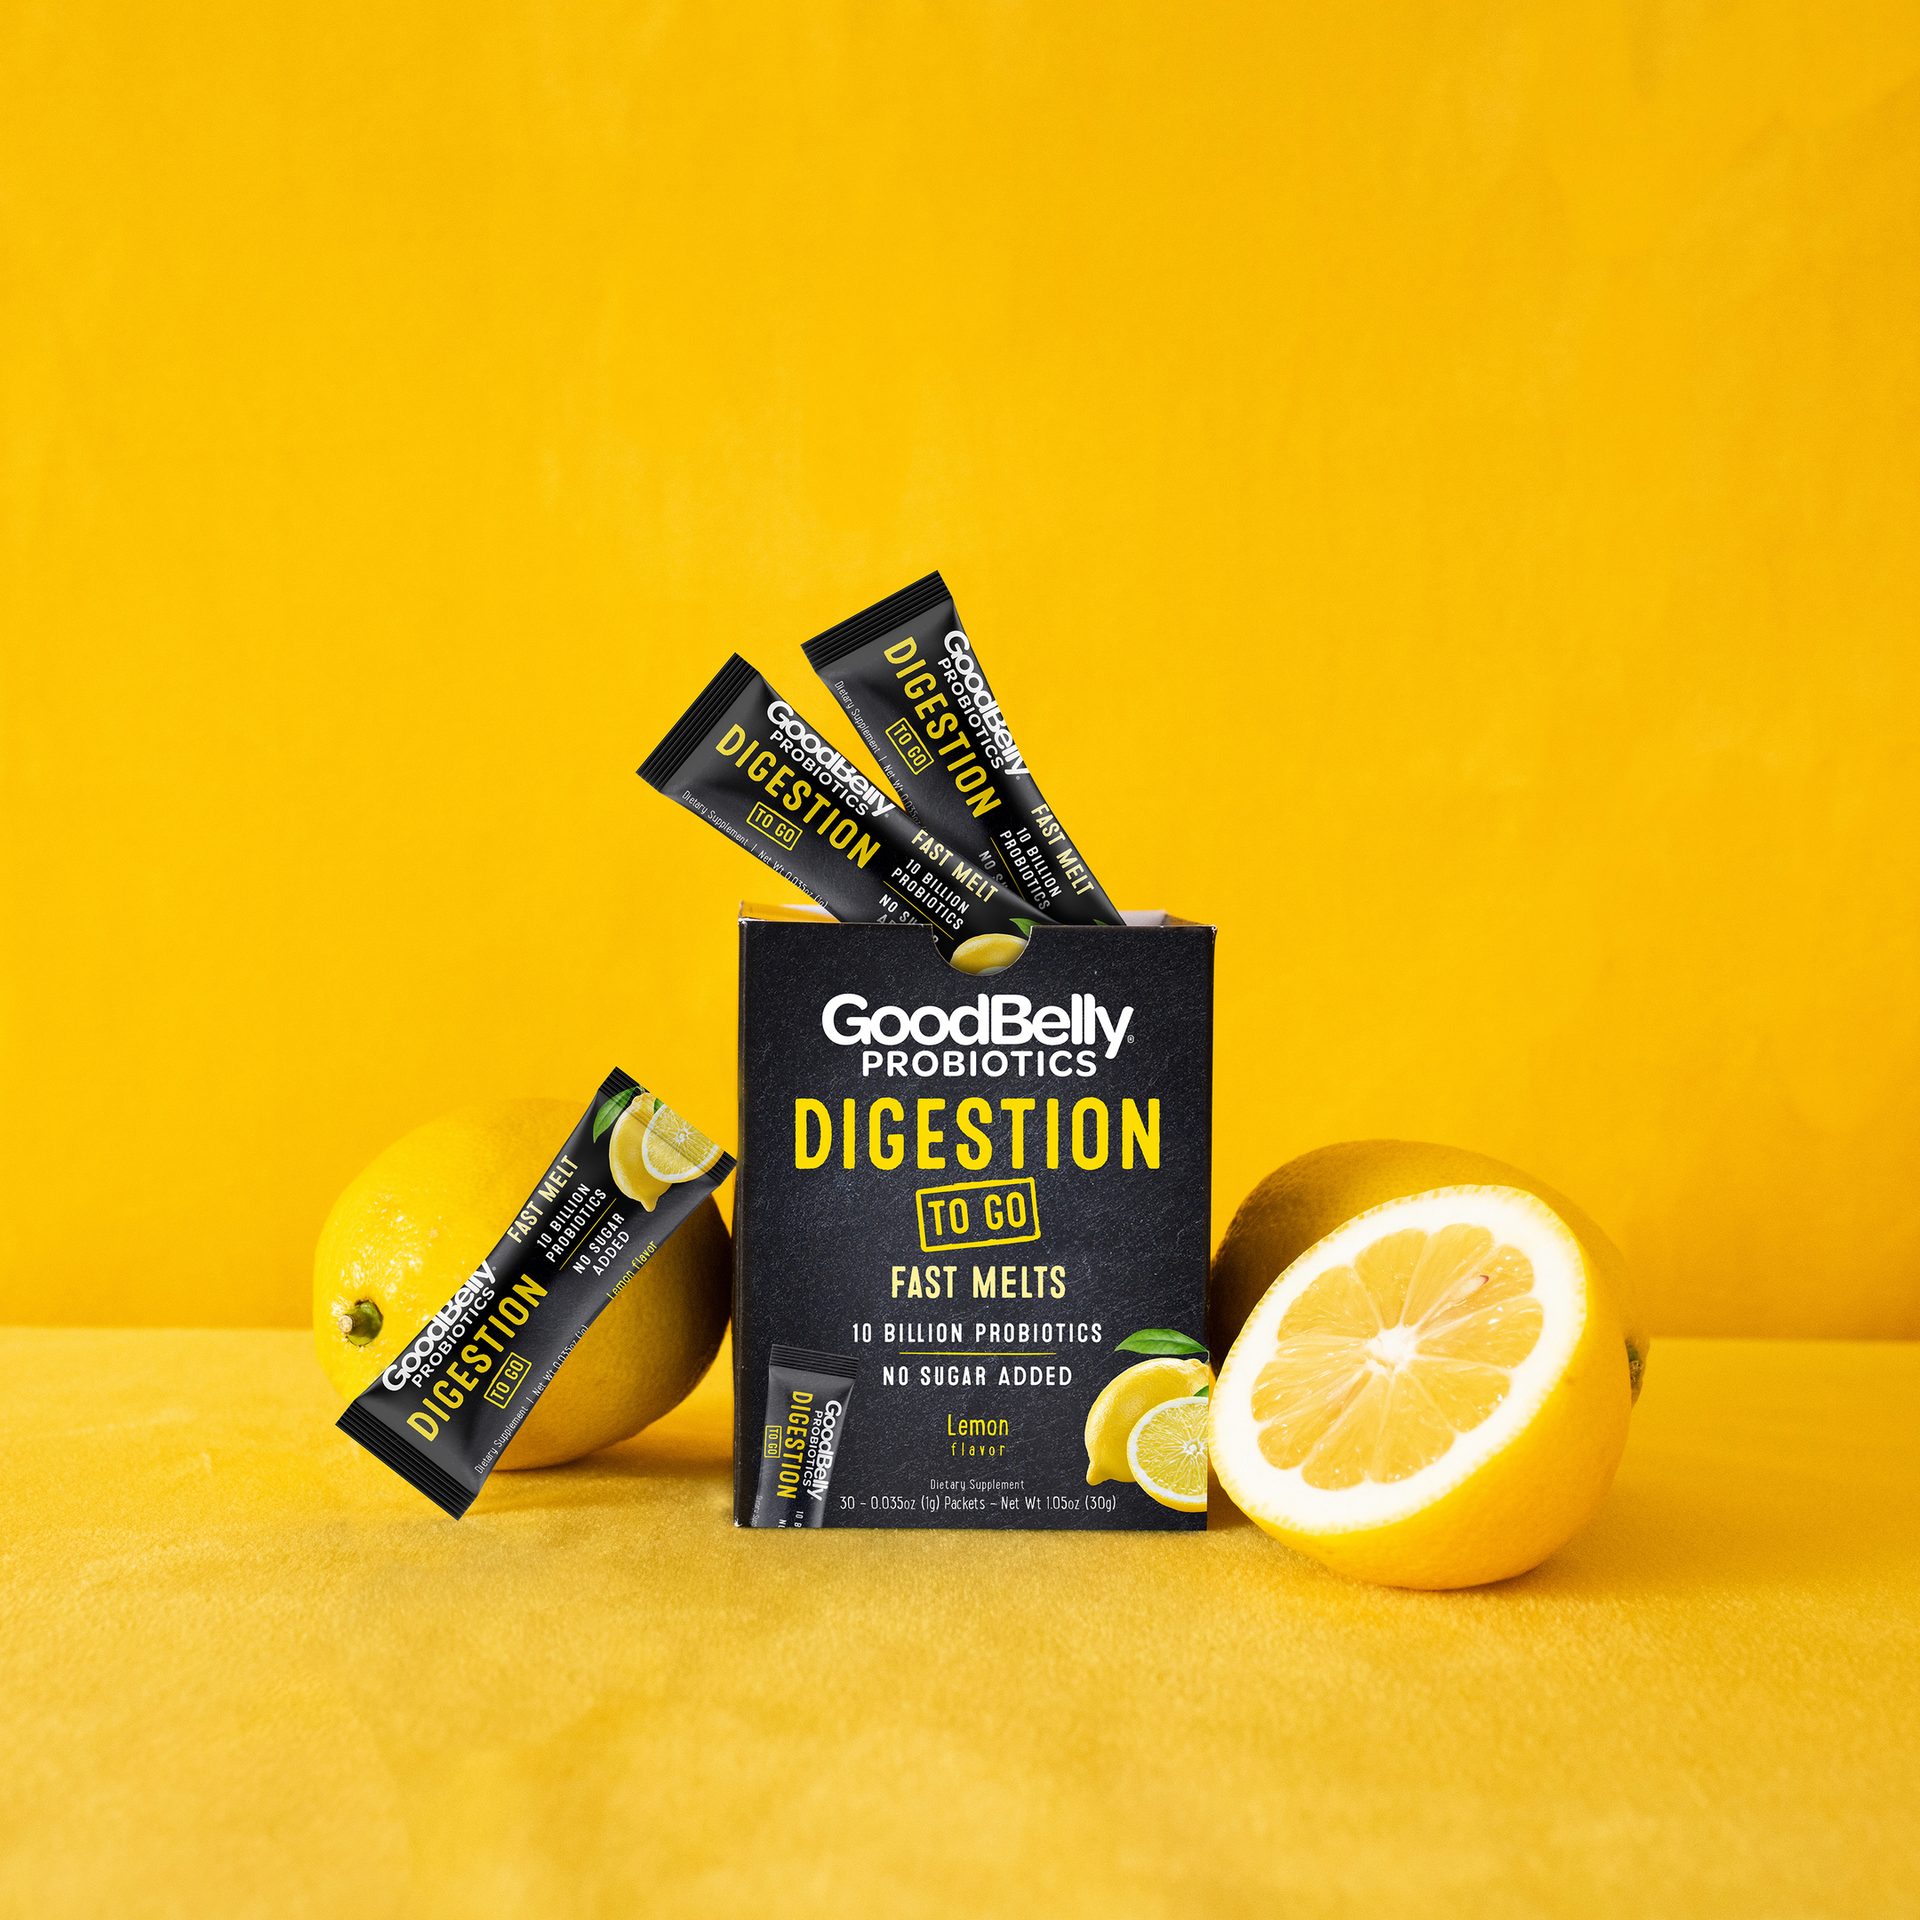 GoodBelly Probiotics Digestion Fast Melts lemon flavor